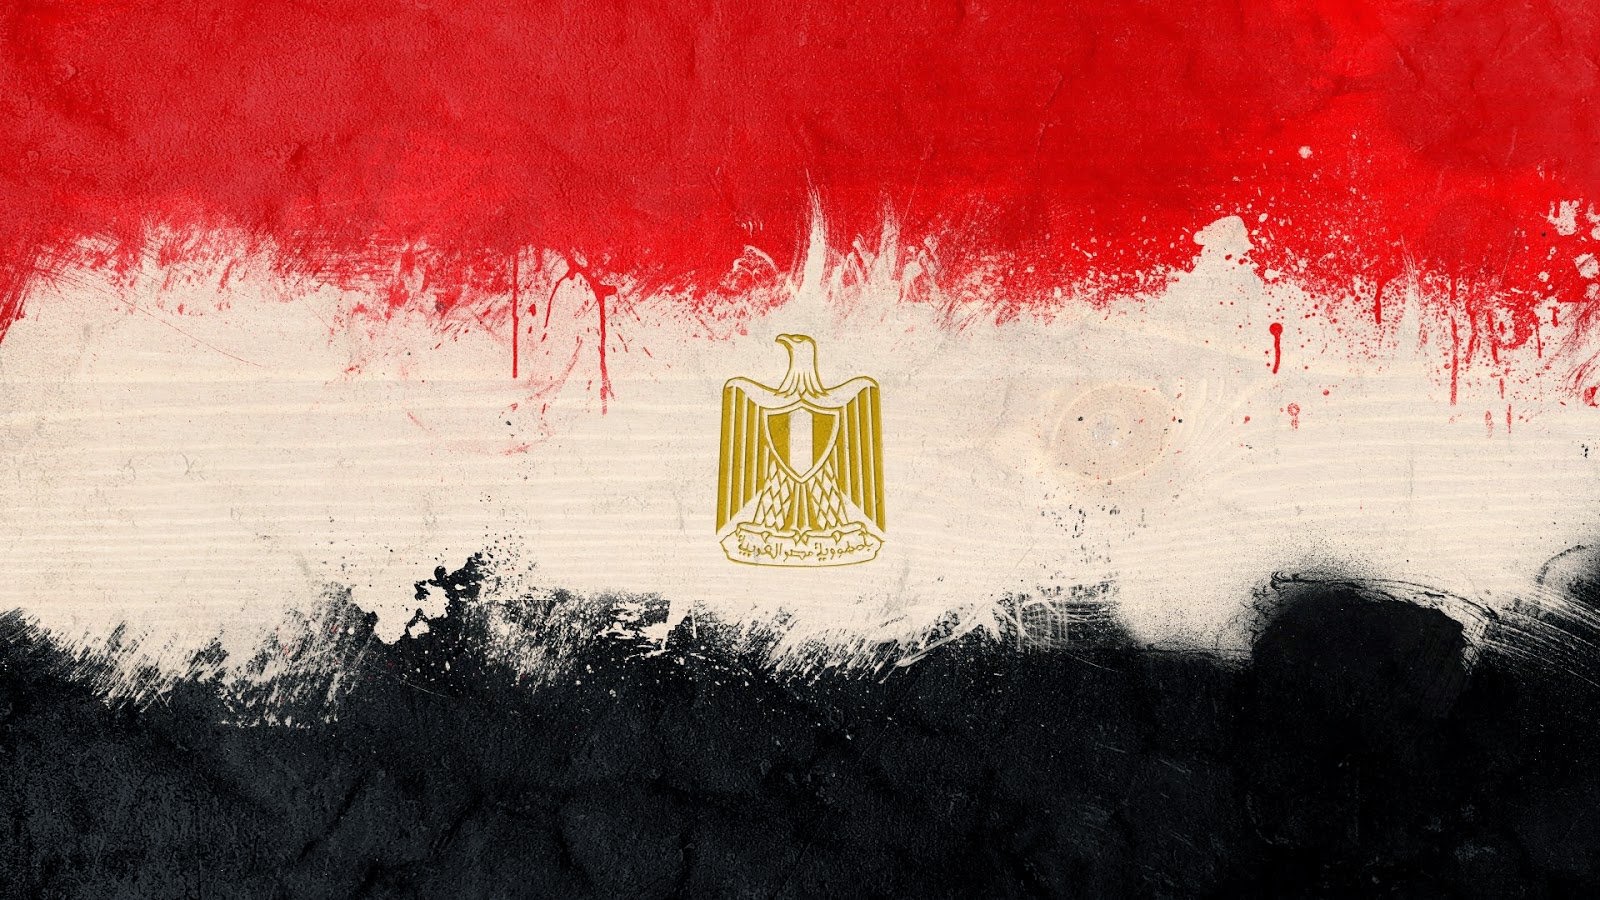 مصر اليوم : مقتل وإصابة 28 شخصا في حوادث متفرقه بالإسكندرية وسوهاج والأقصر